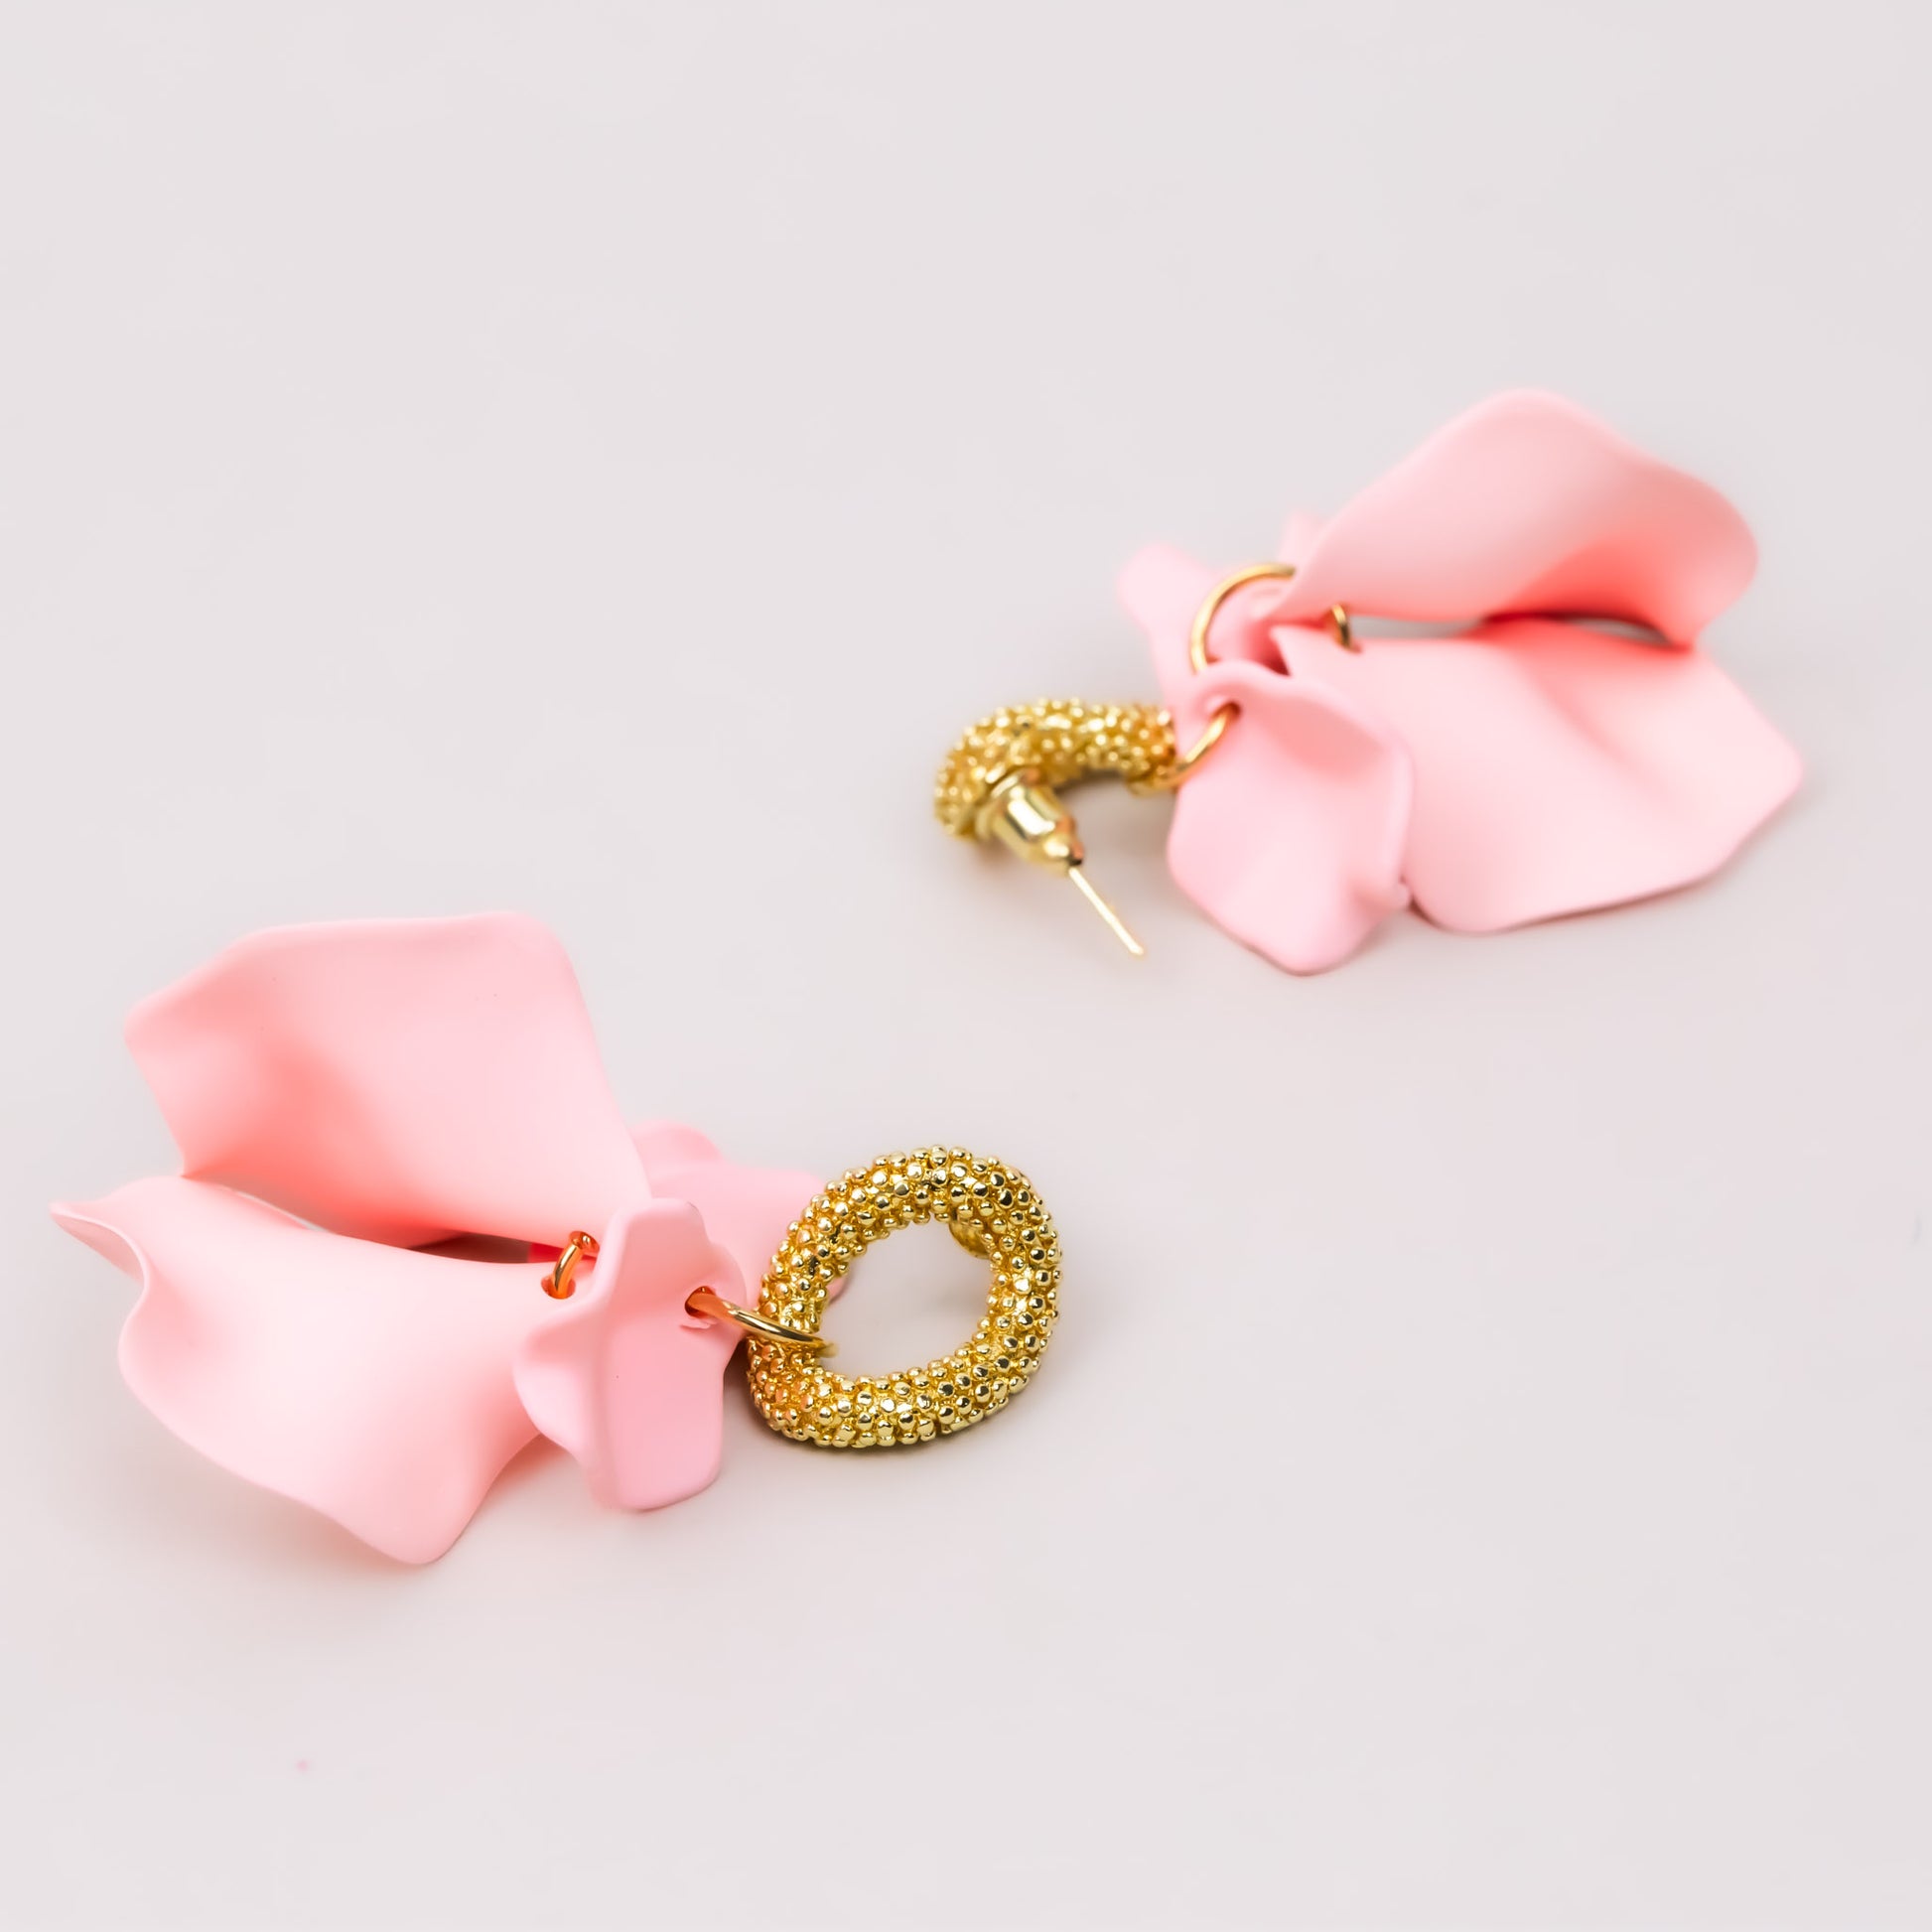 Cercei cu petale fine siliconate - Roz, Auriu